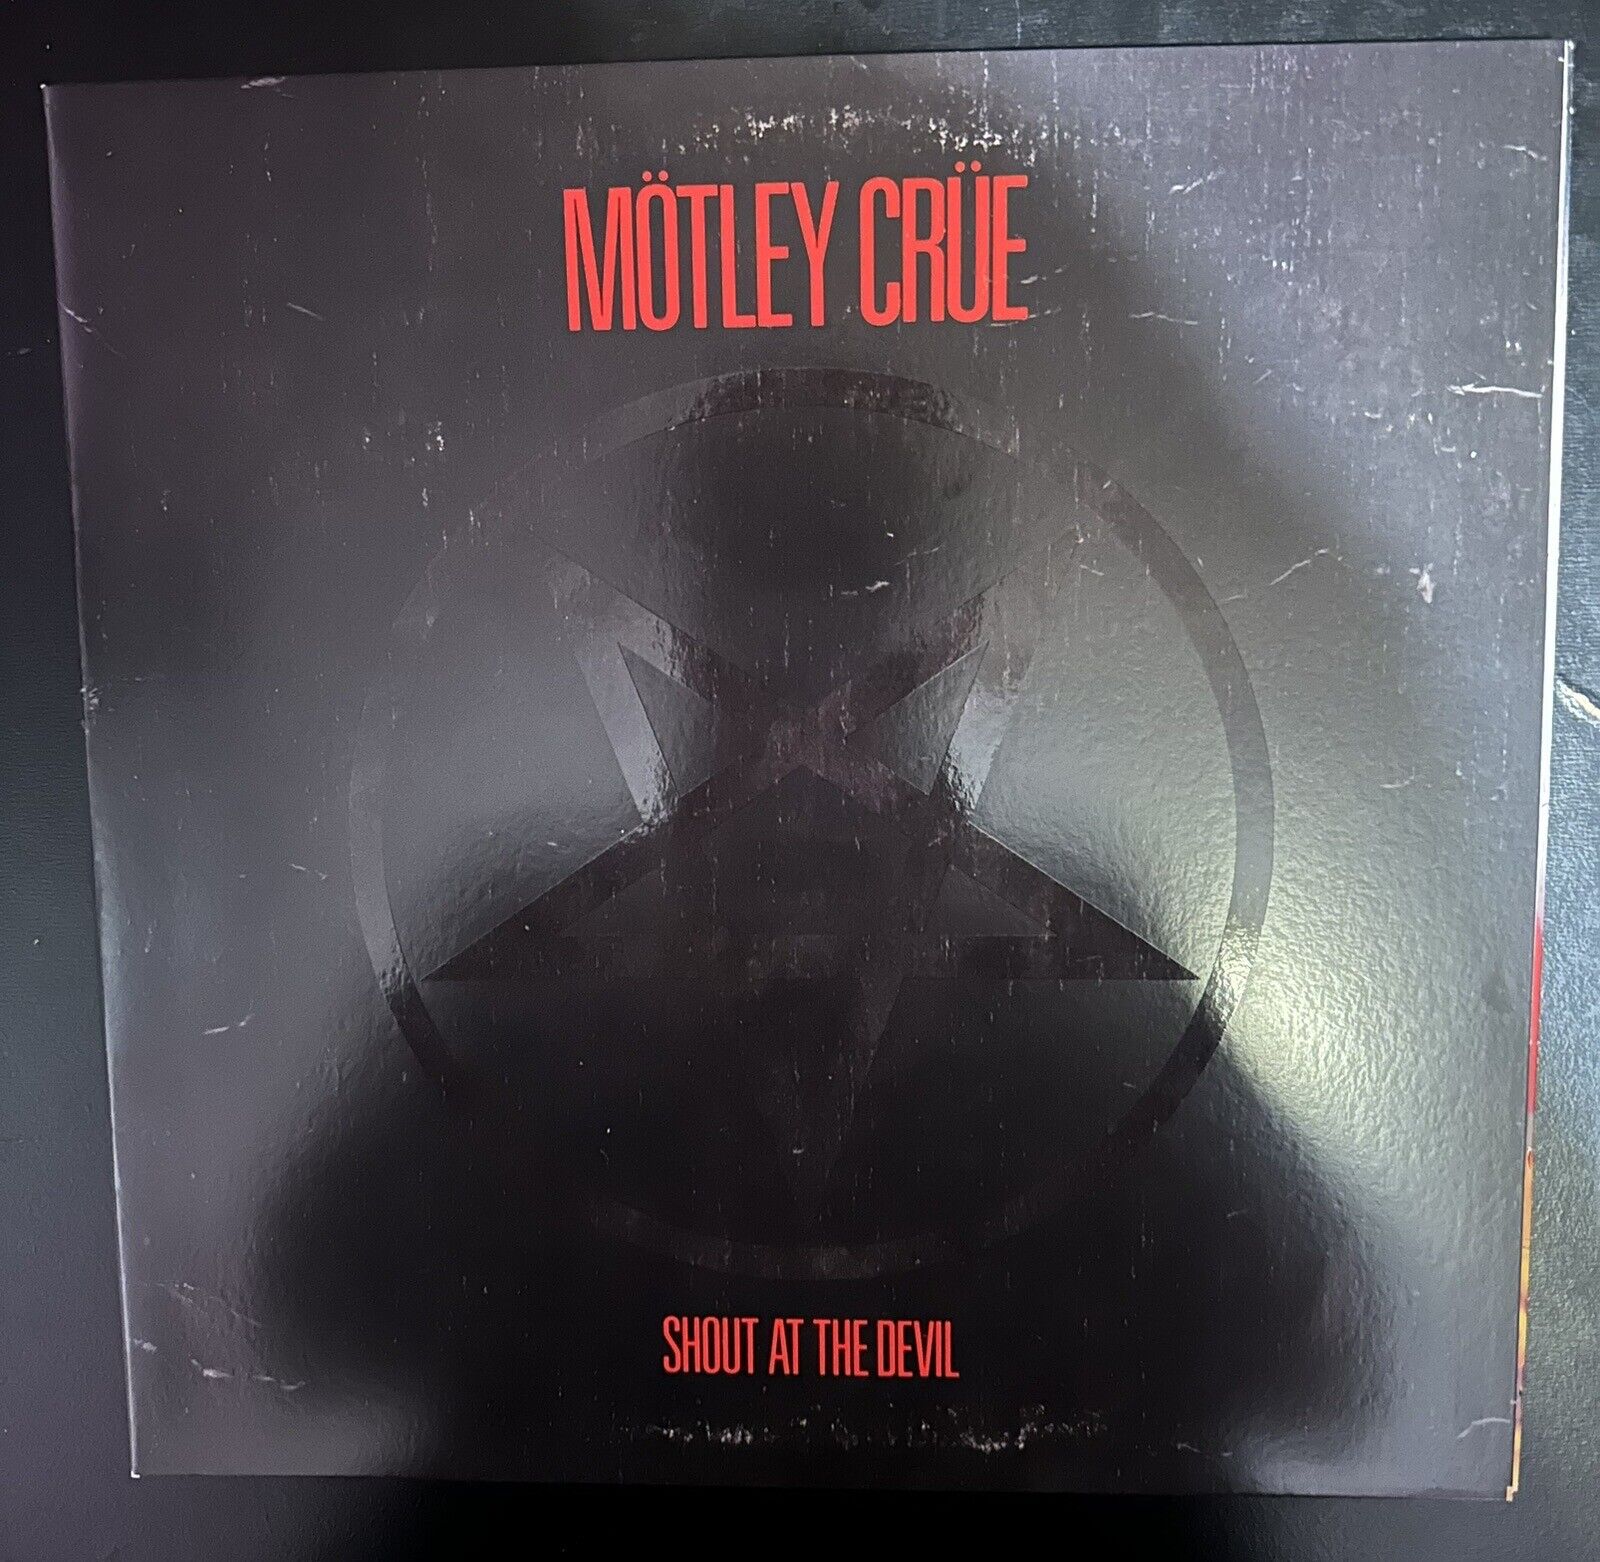 Mötley Crüe - Shout At The Devil. lp black vinyl 2016 reissue.